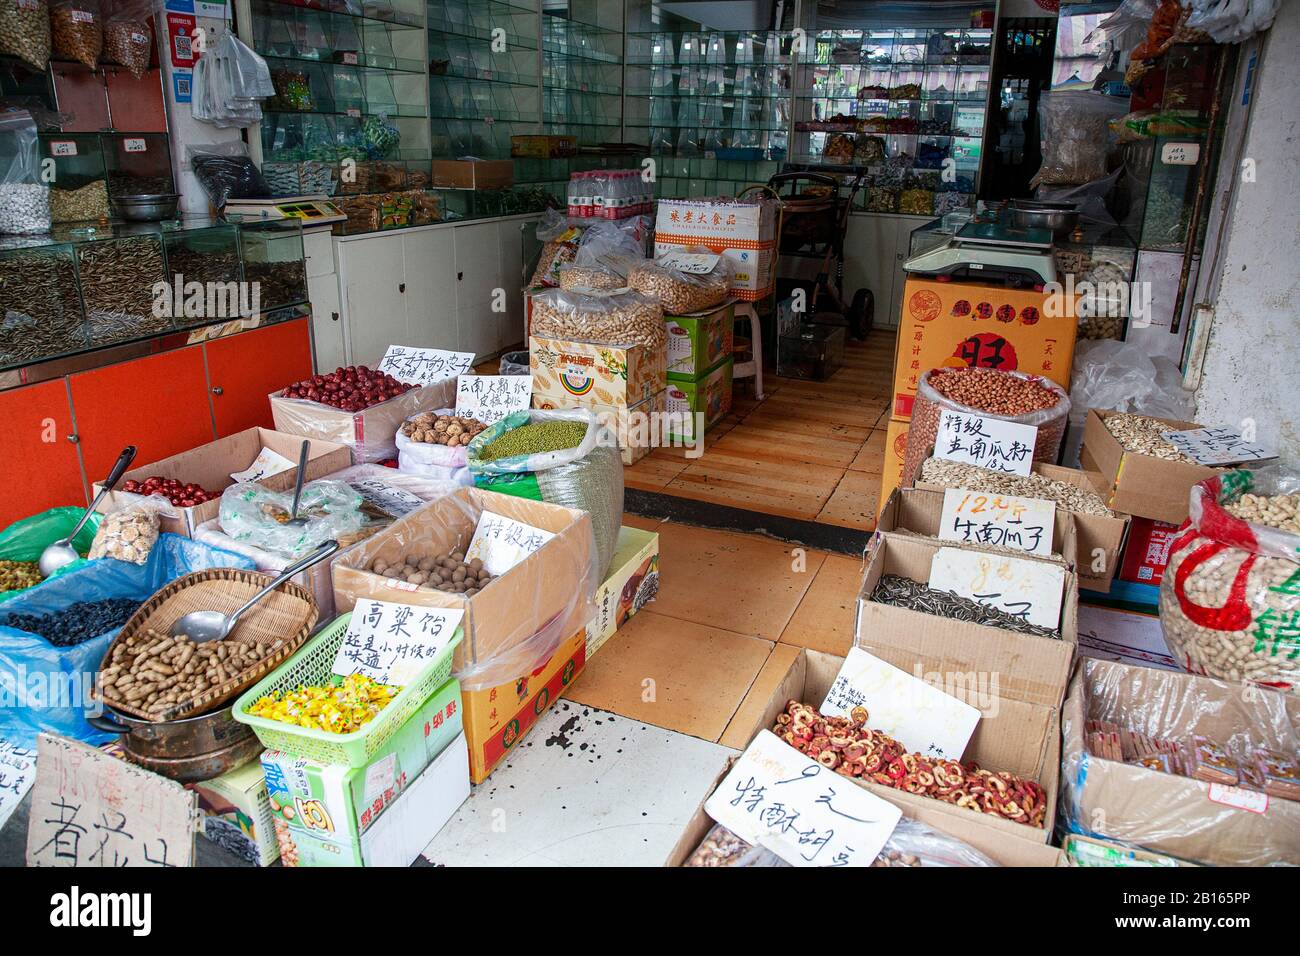 Noix et fruits secs exposés dans les magasins de Chengdu en Chine Banque D'Images